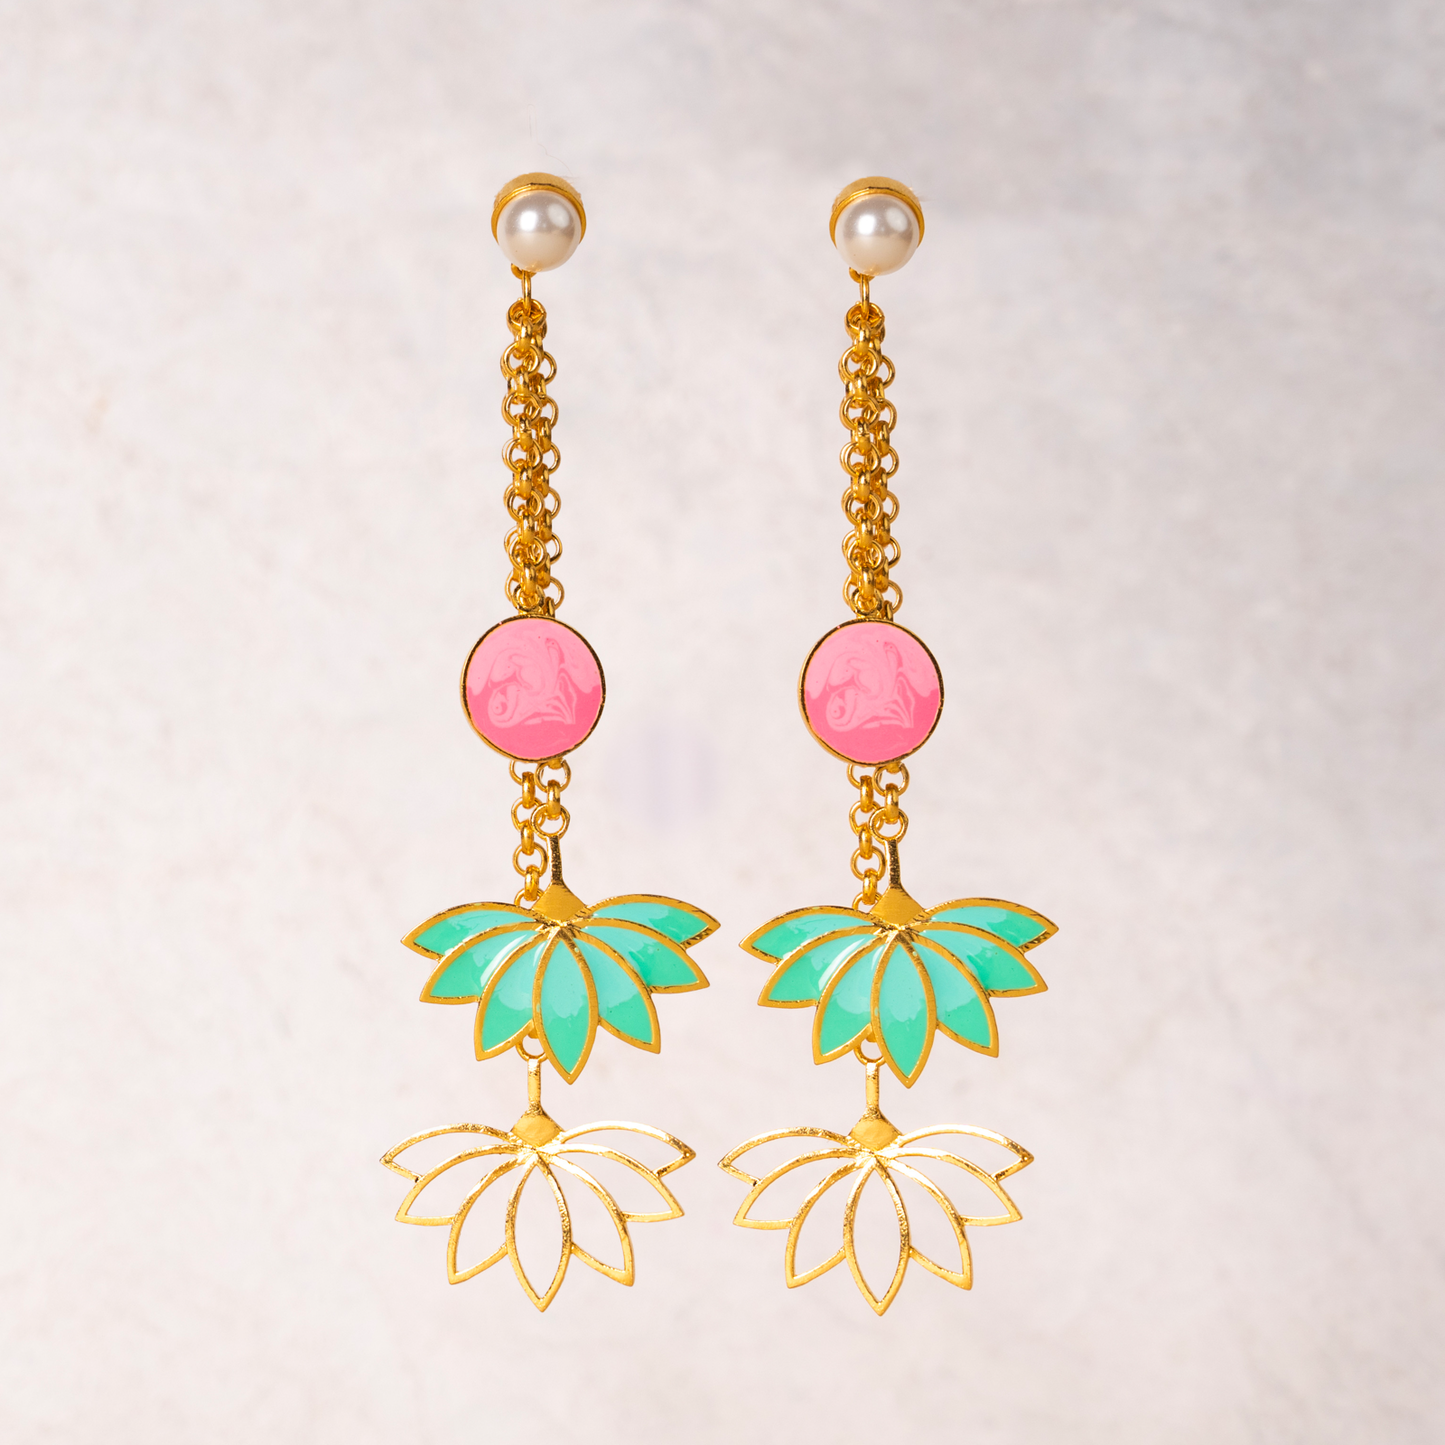 Lotus charm earrings